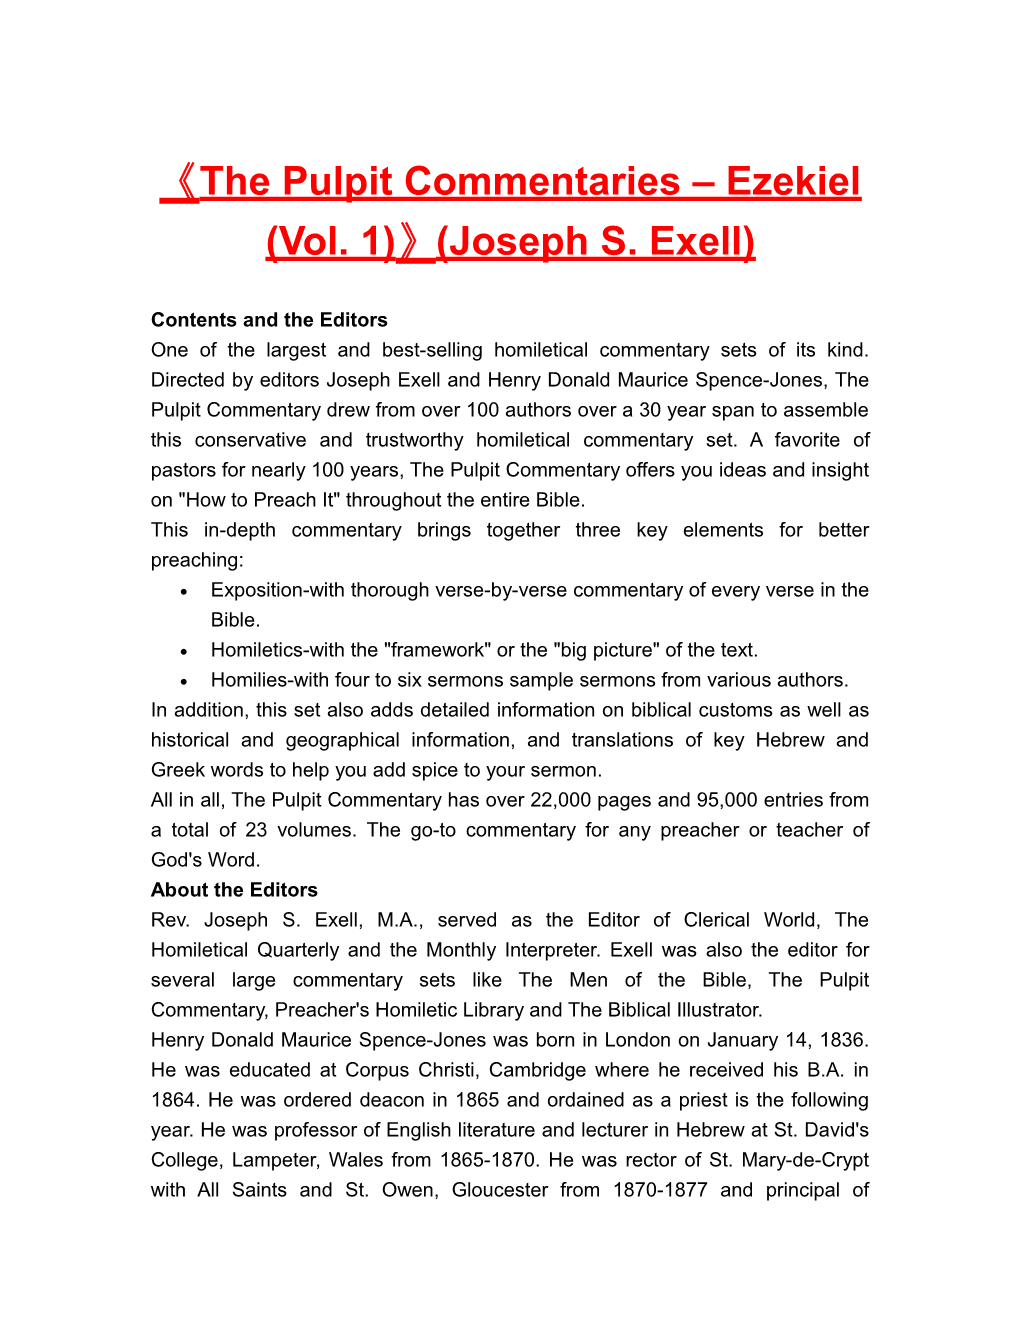 The Pulpit Commentaries Ezekiel (Vol. 1) (Joseph S. Exell)